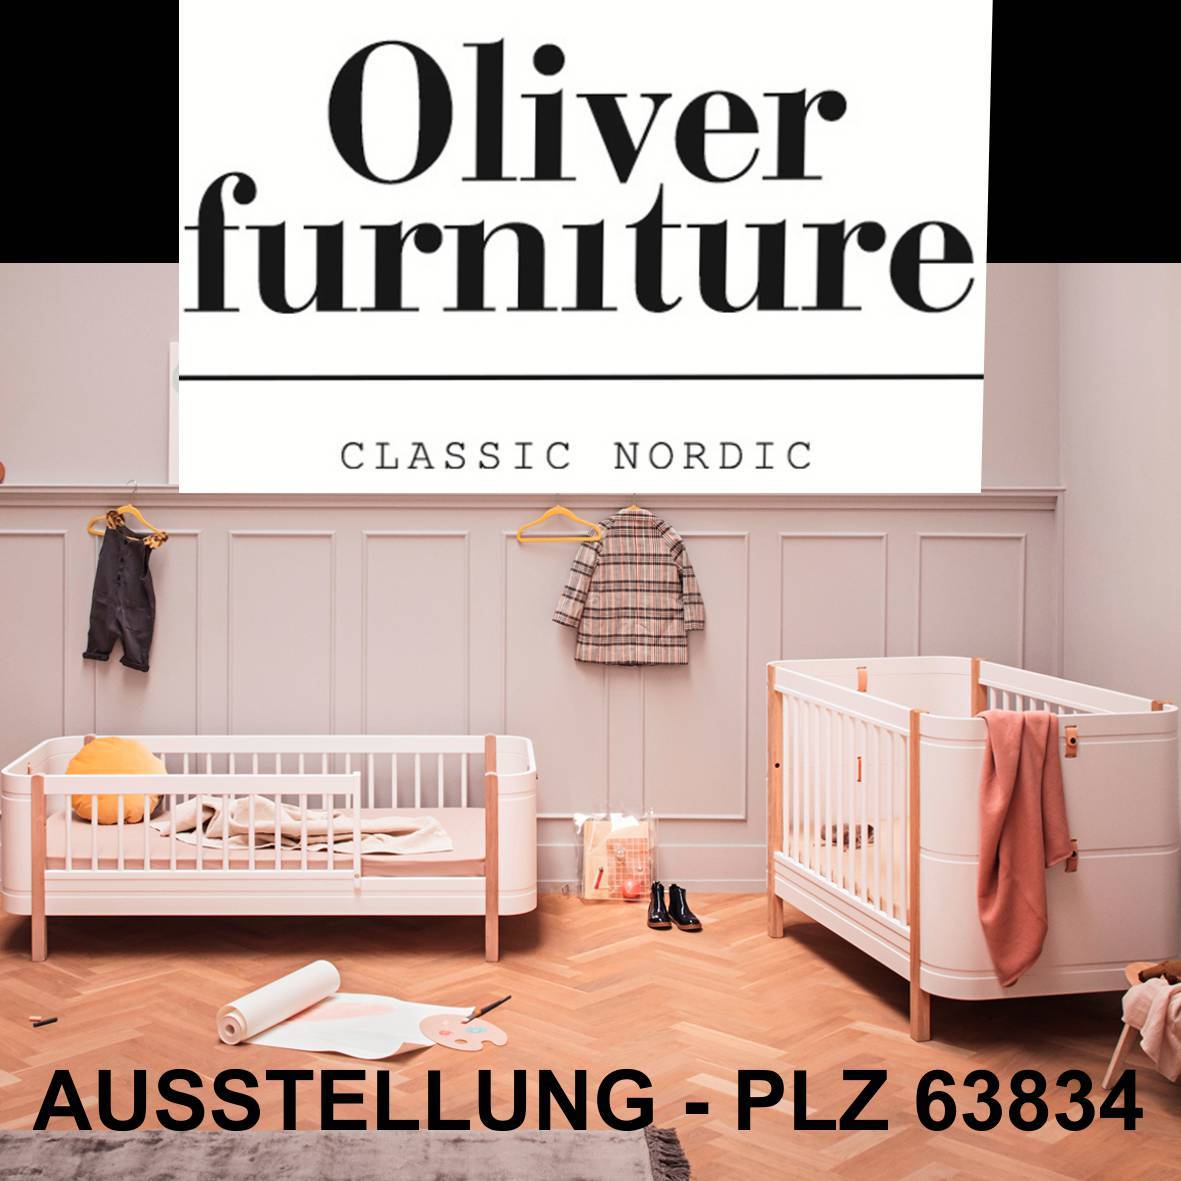 Oliver_furniture-2